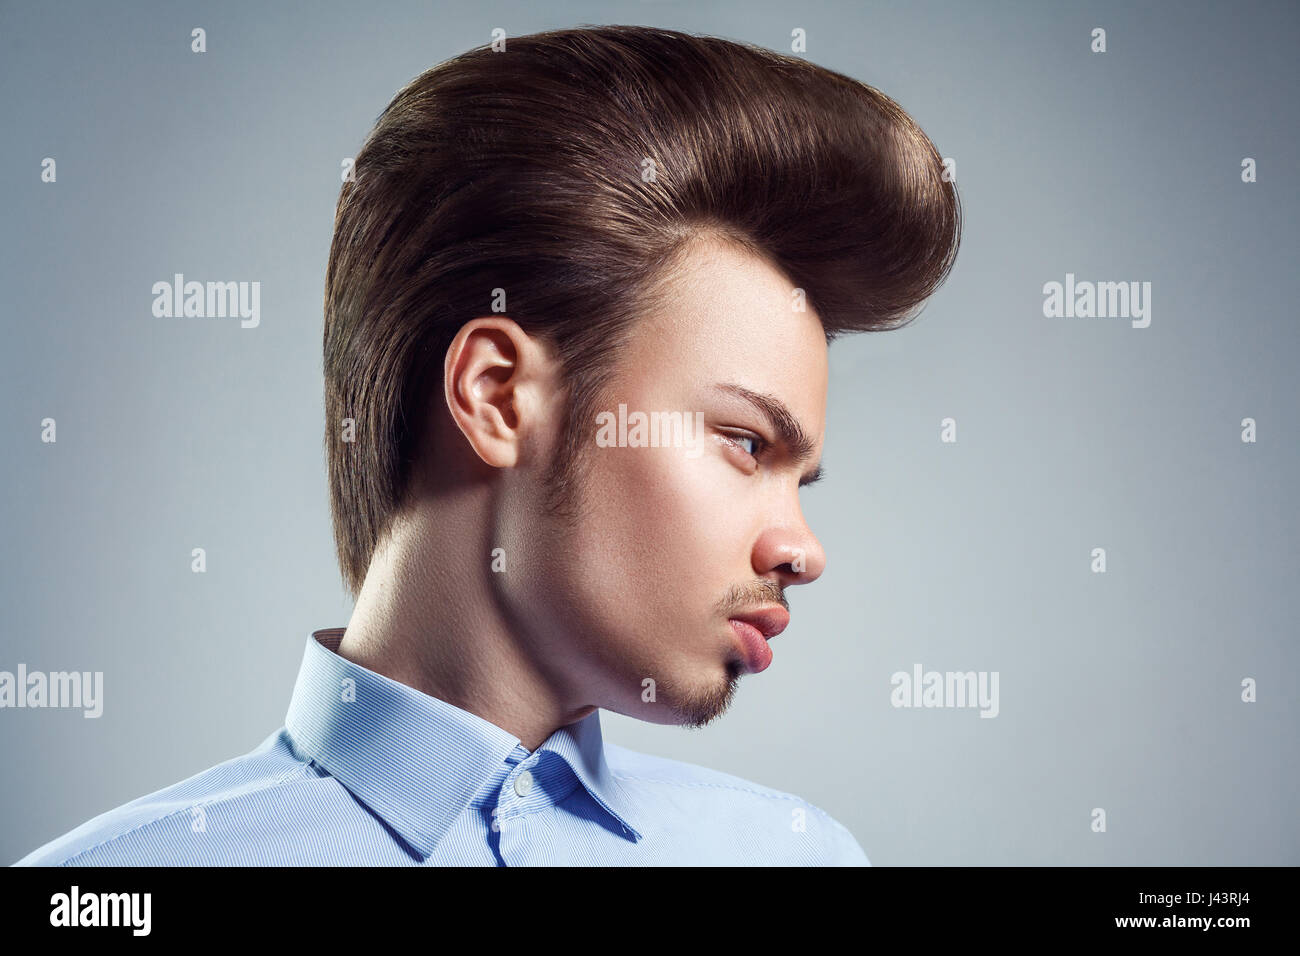 Vue latérale du jeune homme avec retro classic pompadour hairstyle. studio shot. Banque D'Images